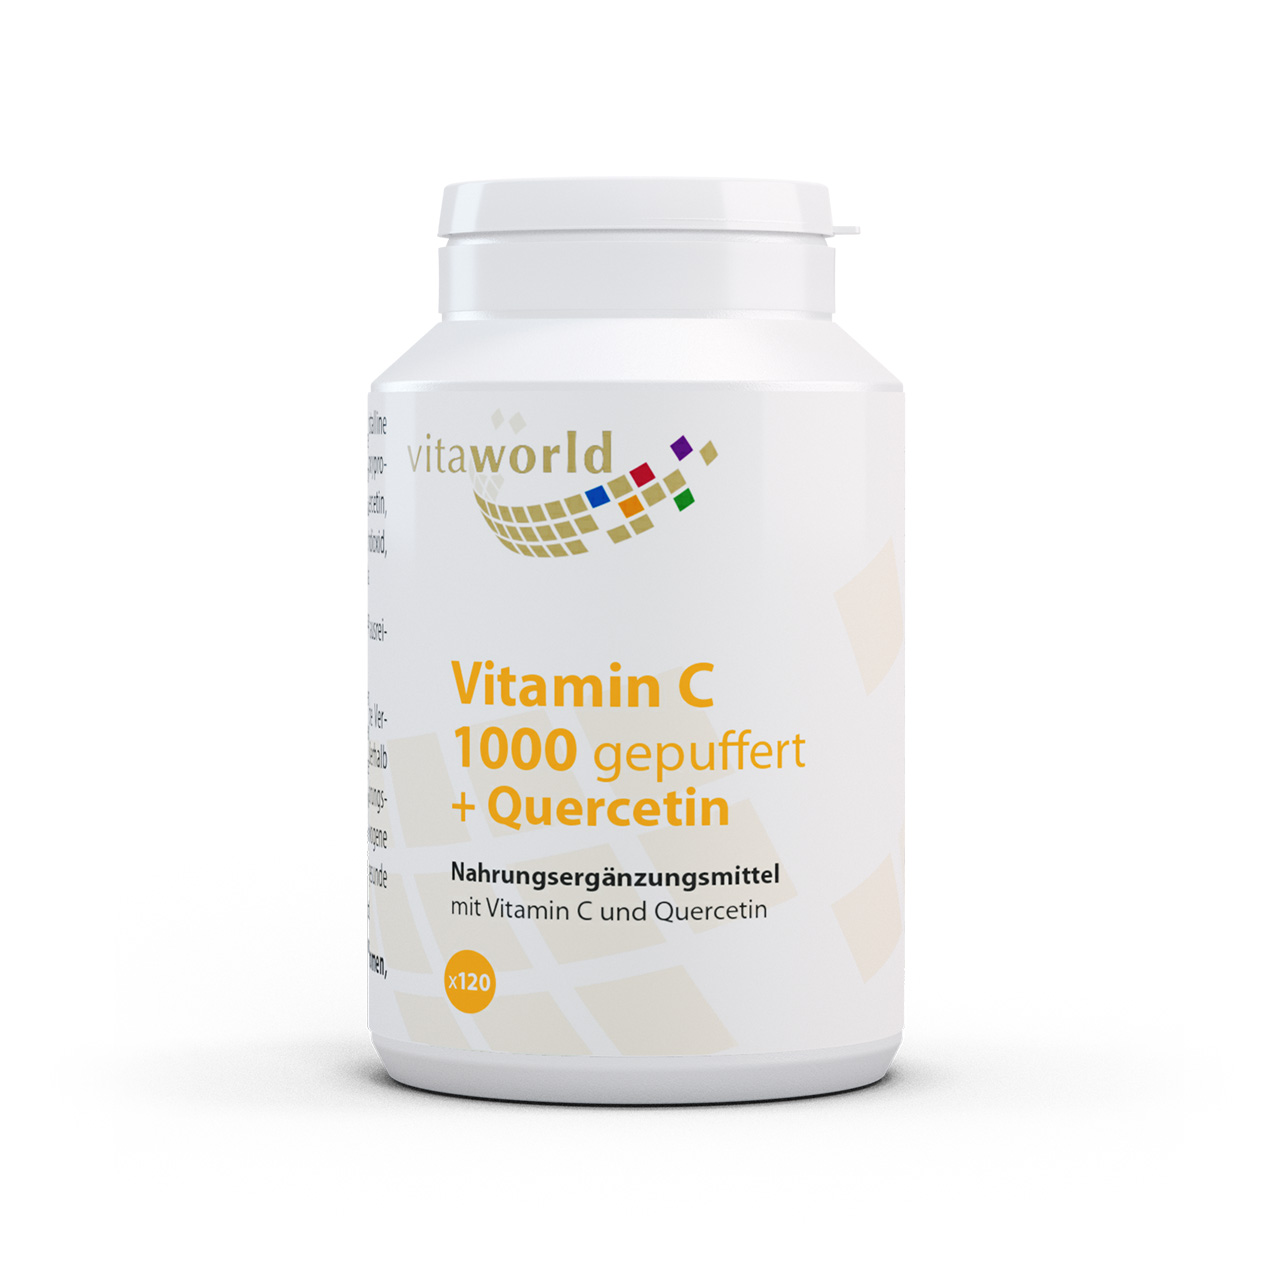 Vitamin C 1000 gepuffert + Quercetin (120 Tbl)